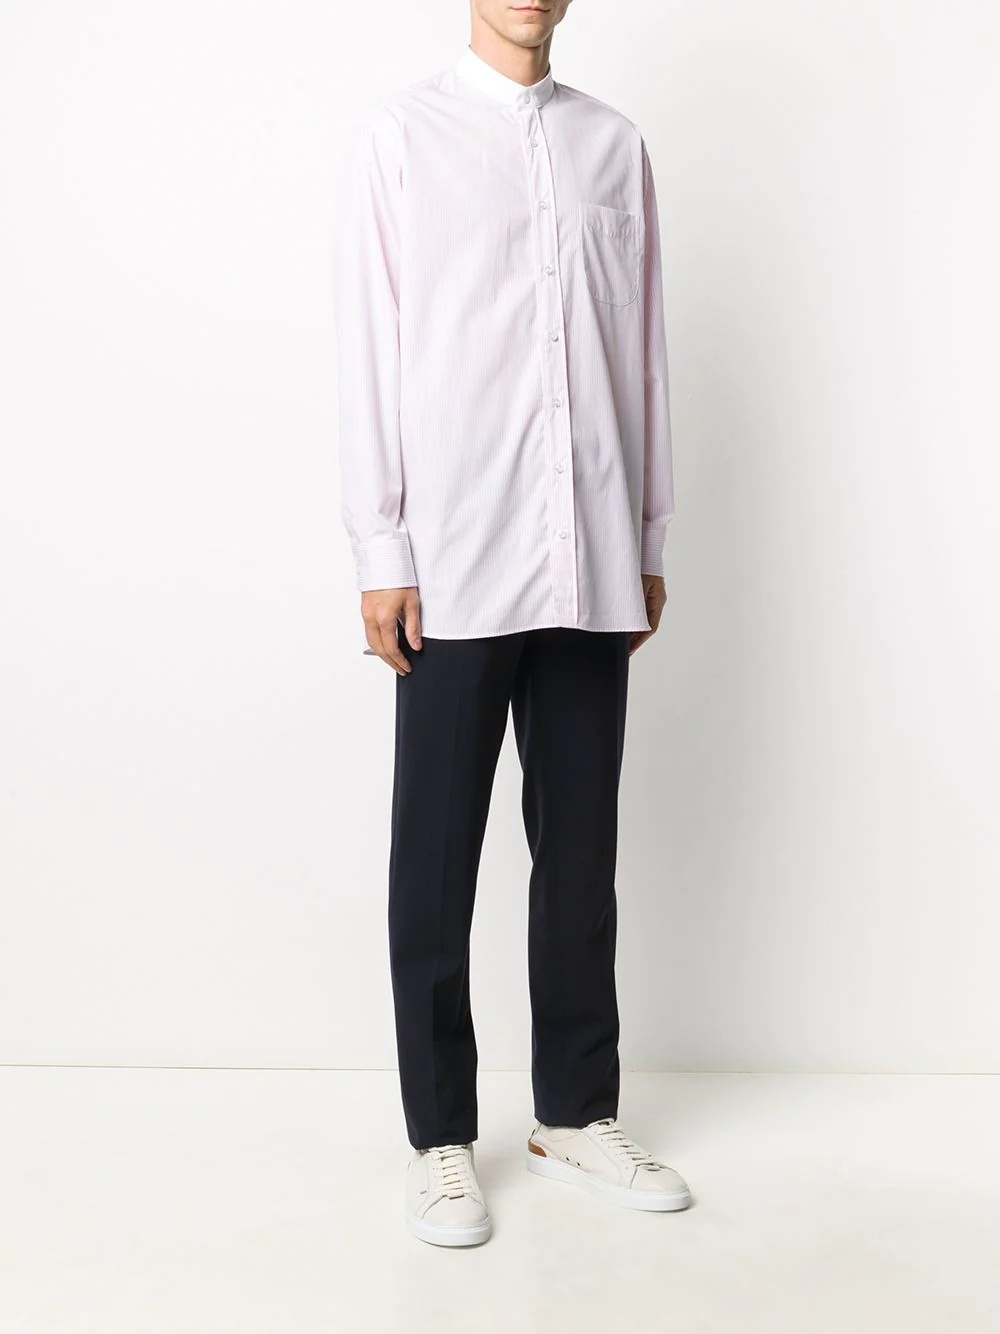 mandarin-collar buttoned shirt - 3